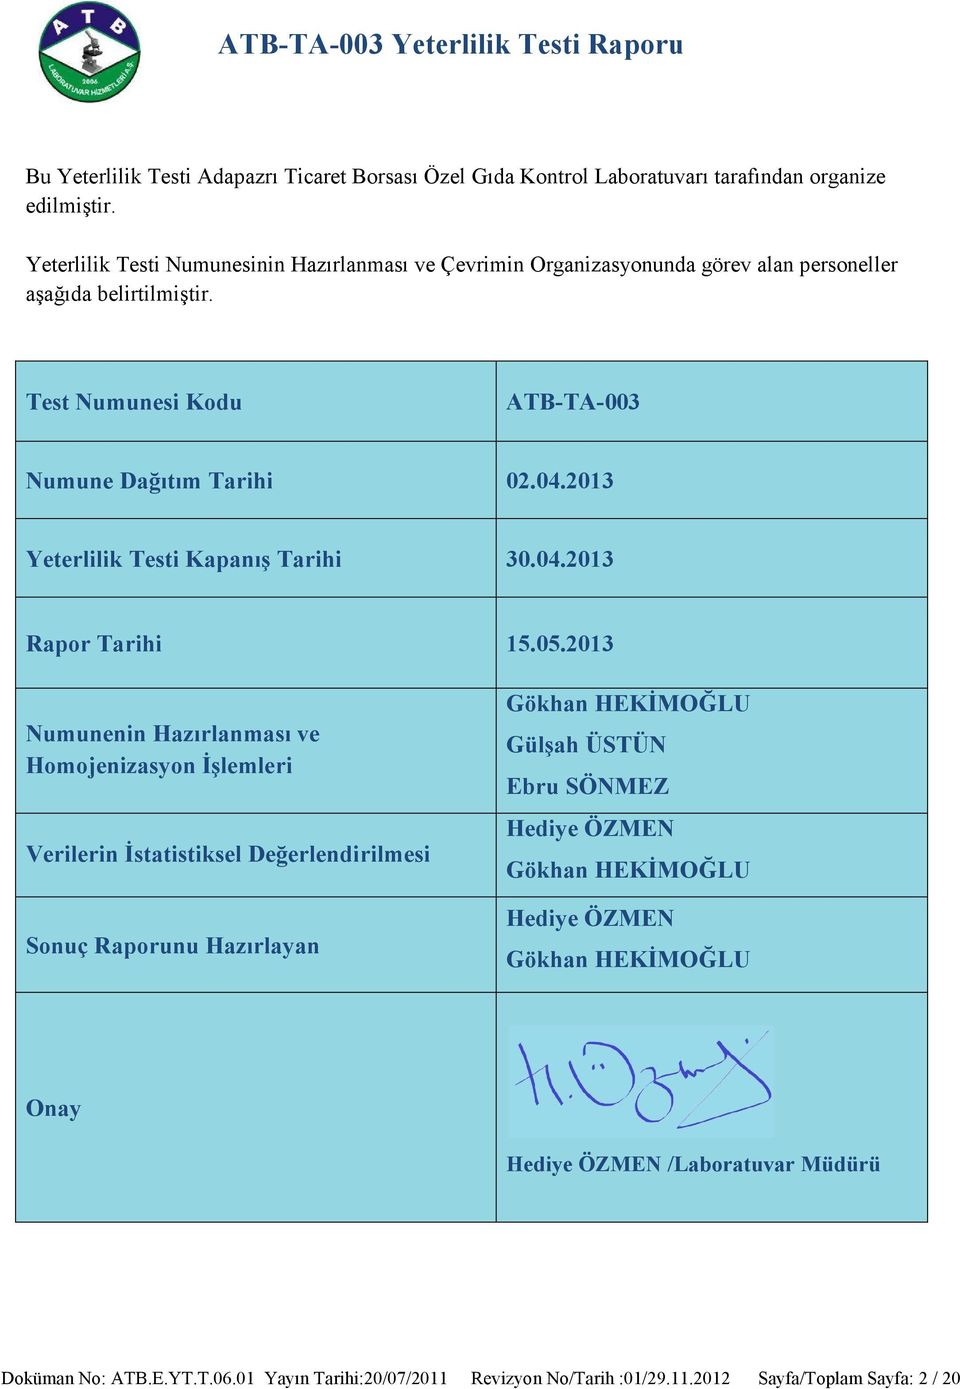 2013 Yeterlilik Testi Kapanış Tarihi 30.04.2013 Rapor Tarihi 15.05.